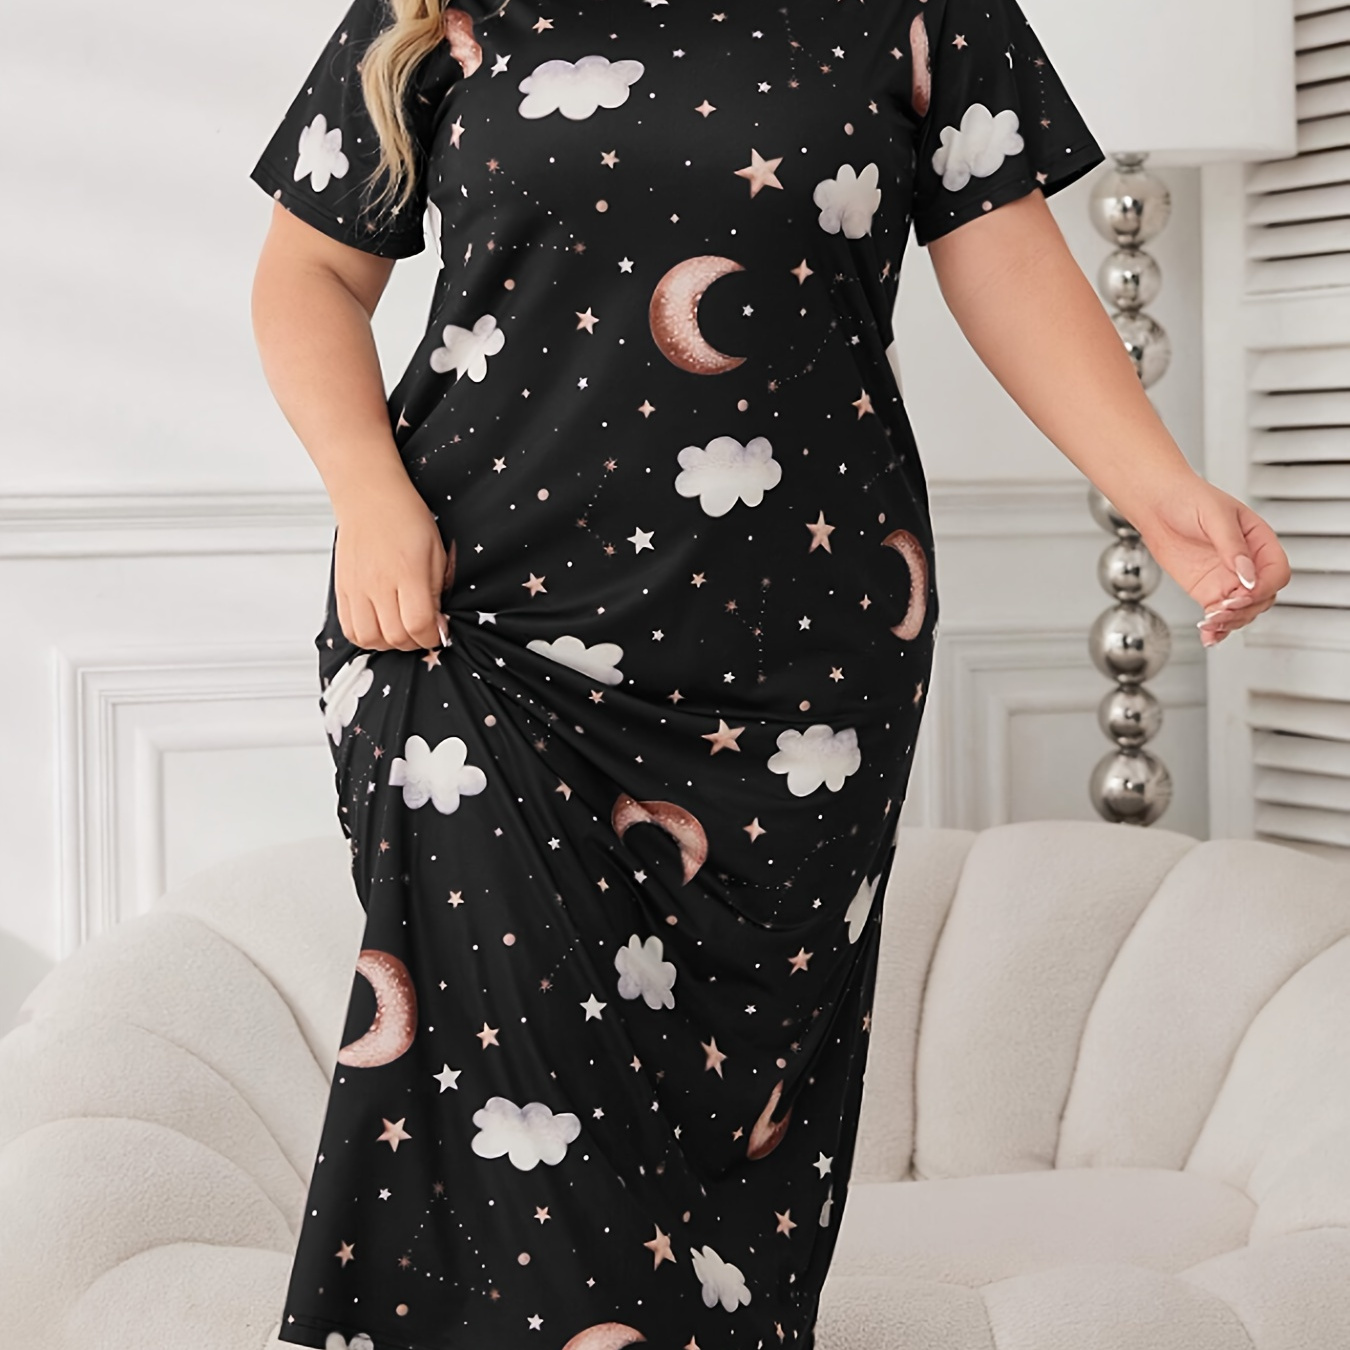 

Robe de nuit élégante pour femme, grande taille, motif lune, étoiles et nuages, manches courtes, col rond